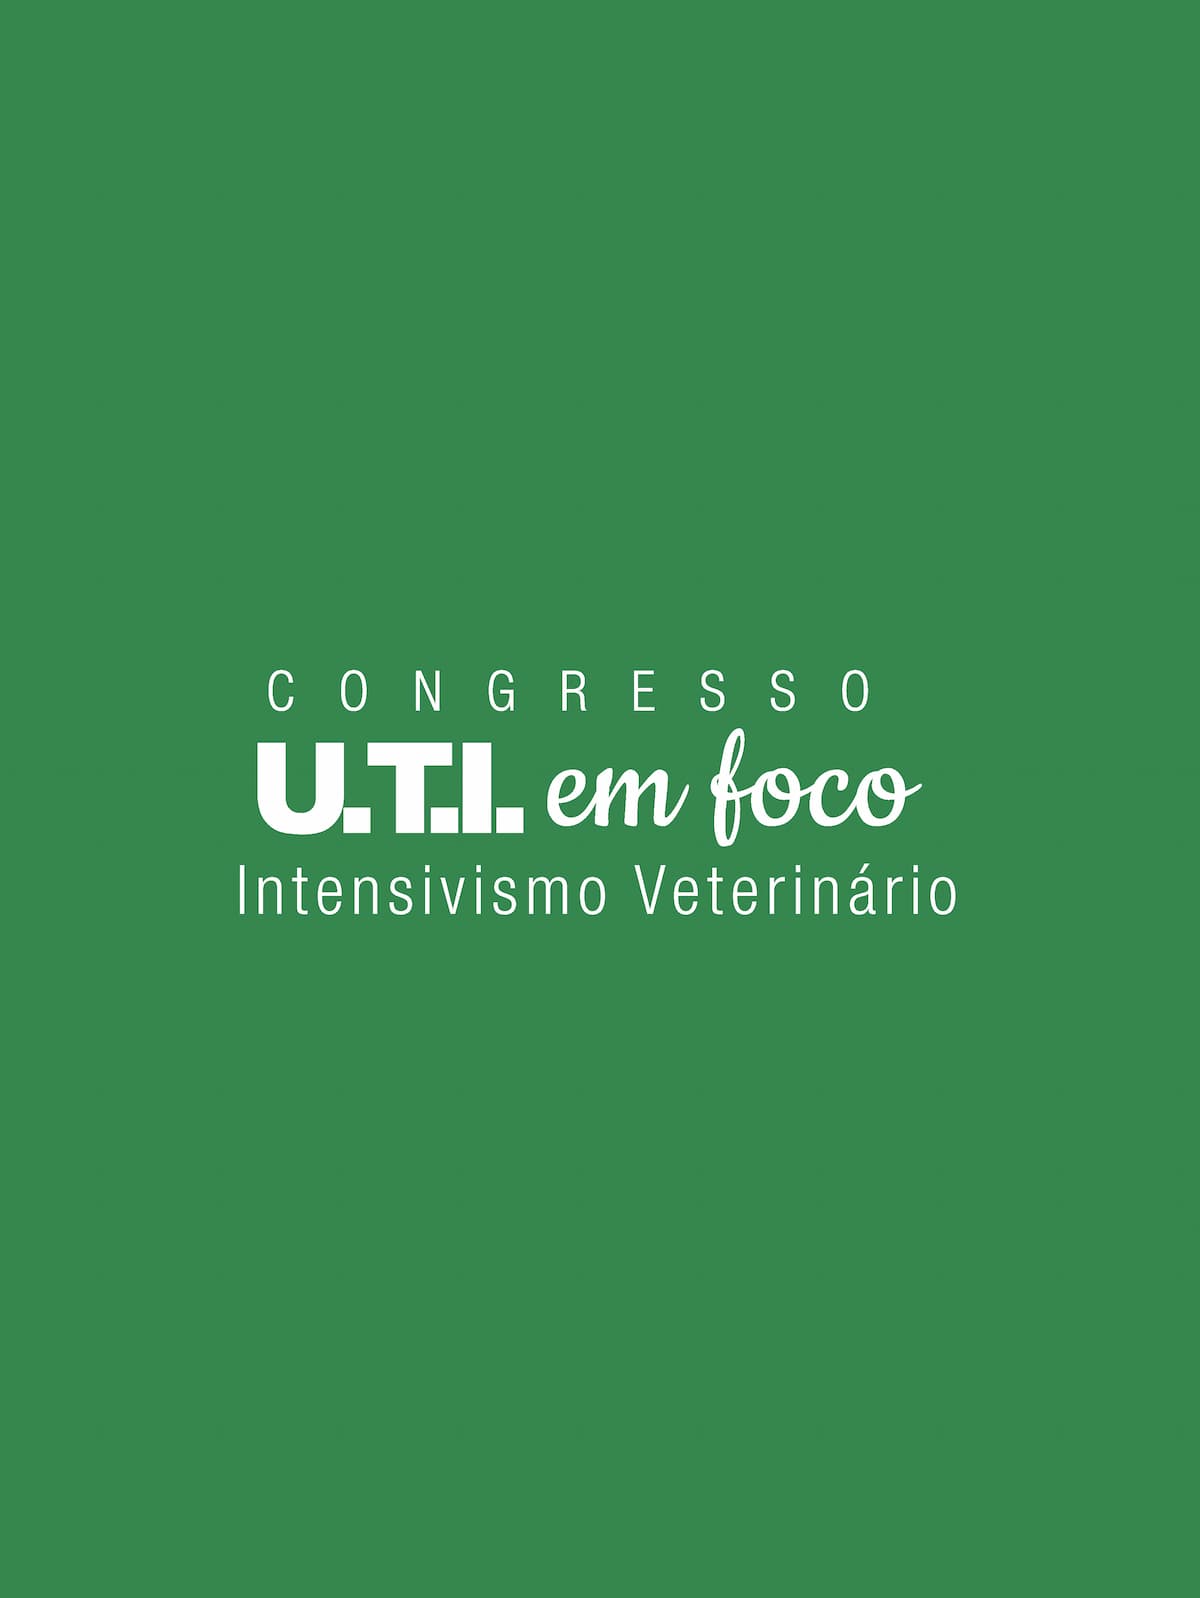 Congresso U.T.I. em Foco Veterinários